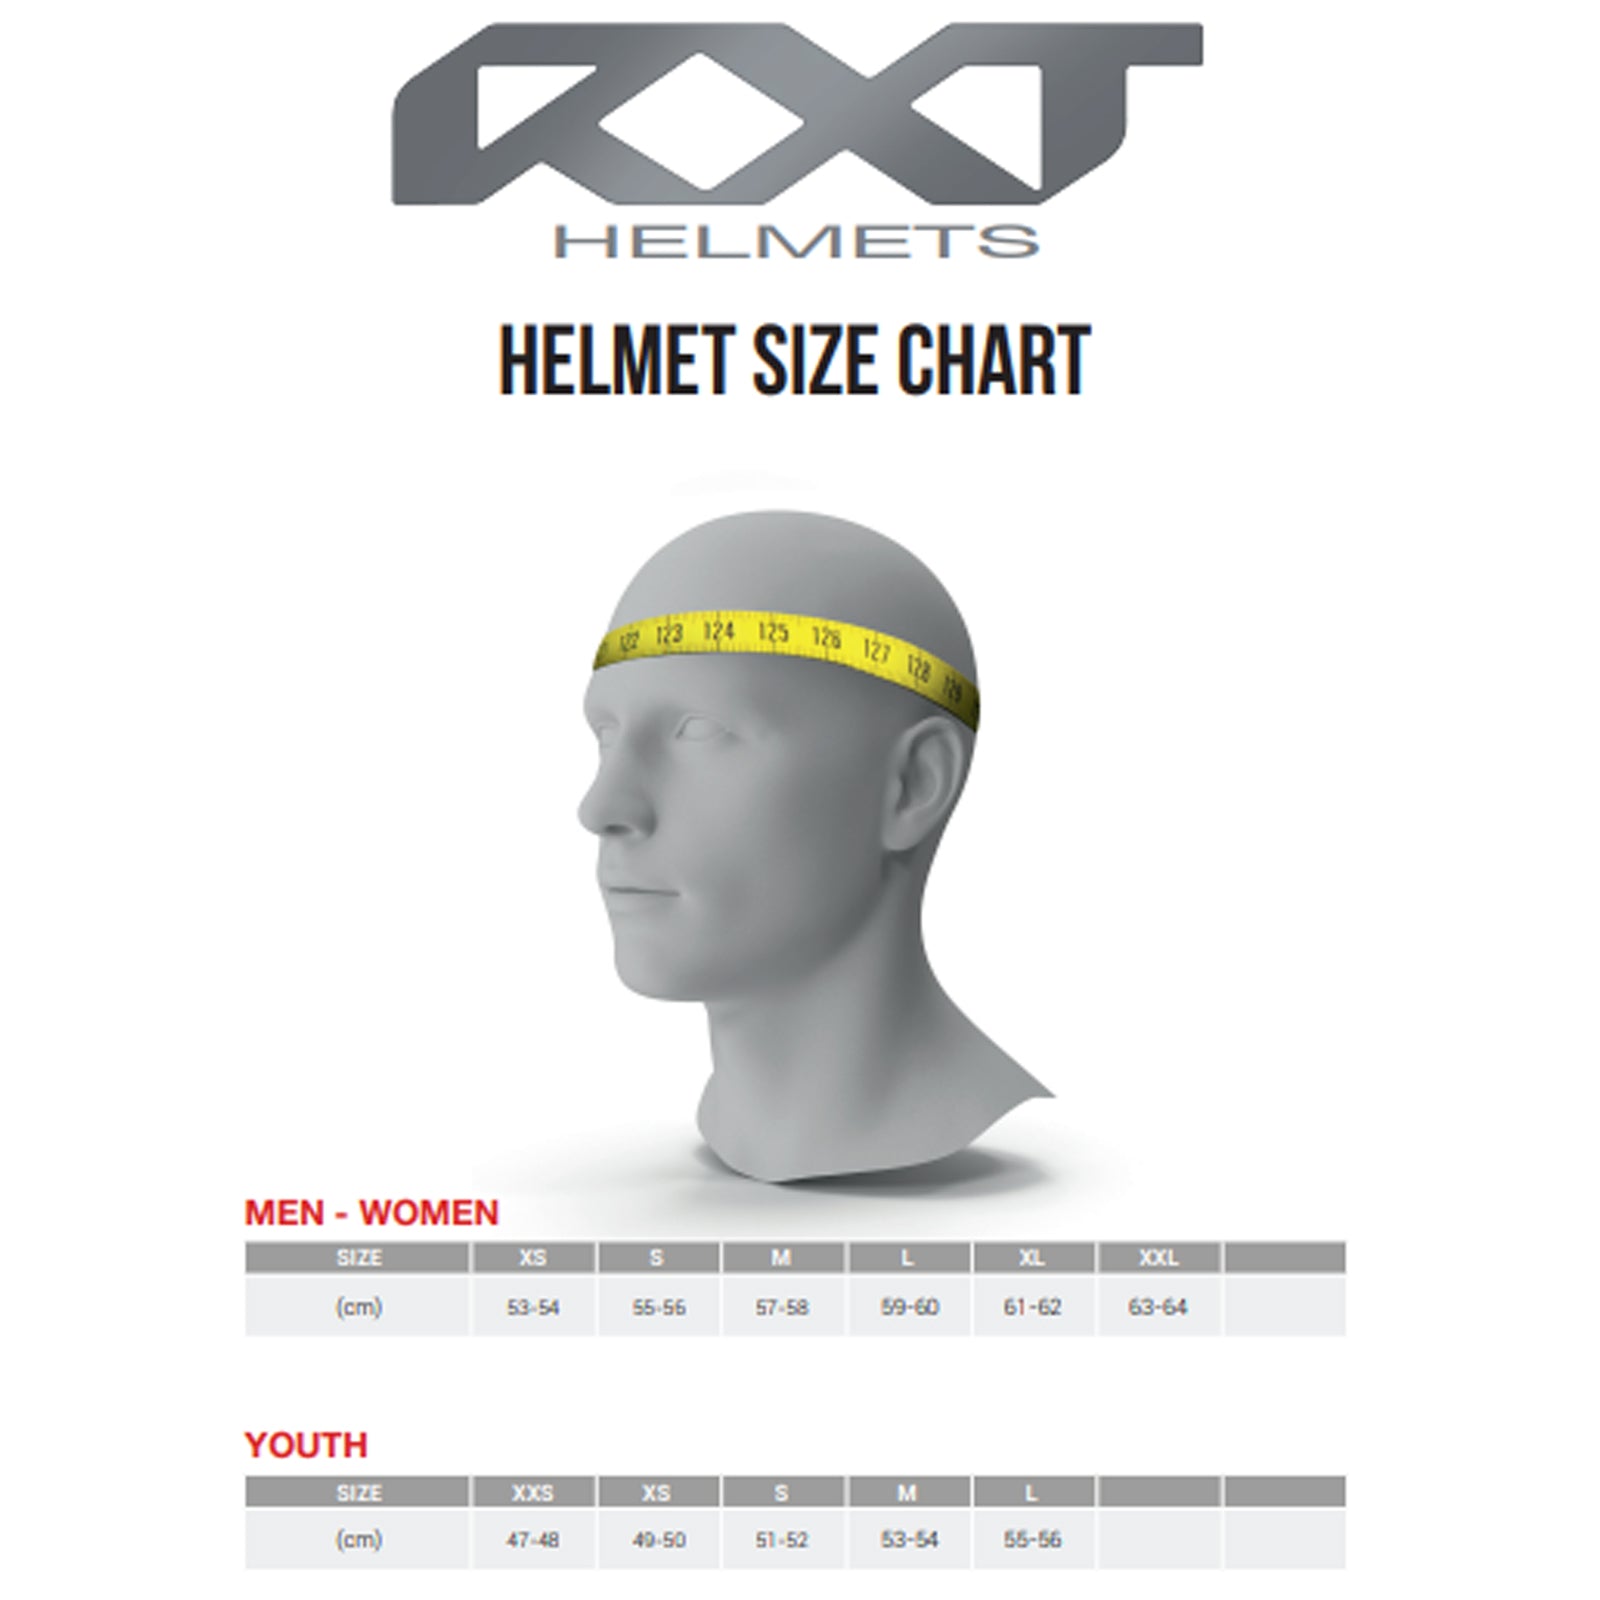 RXT Motorcycle Helmet Metro